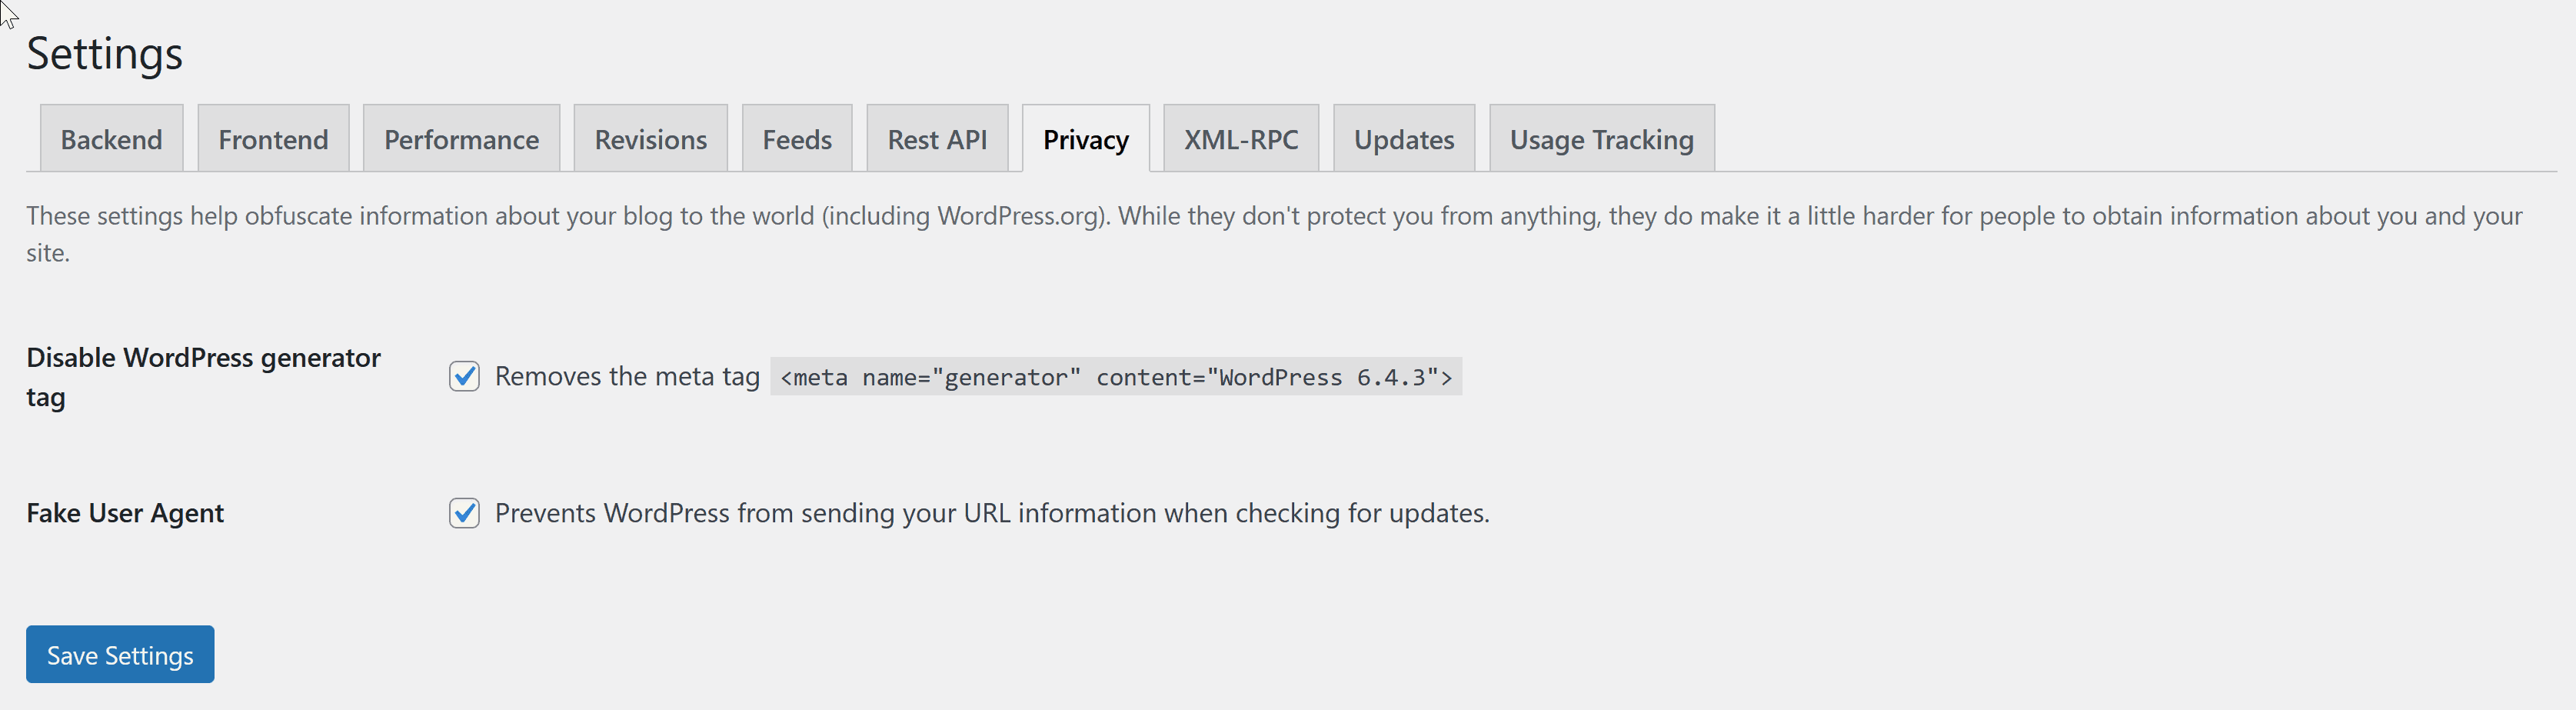 XML-RPC settings